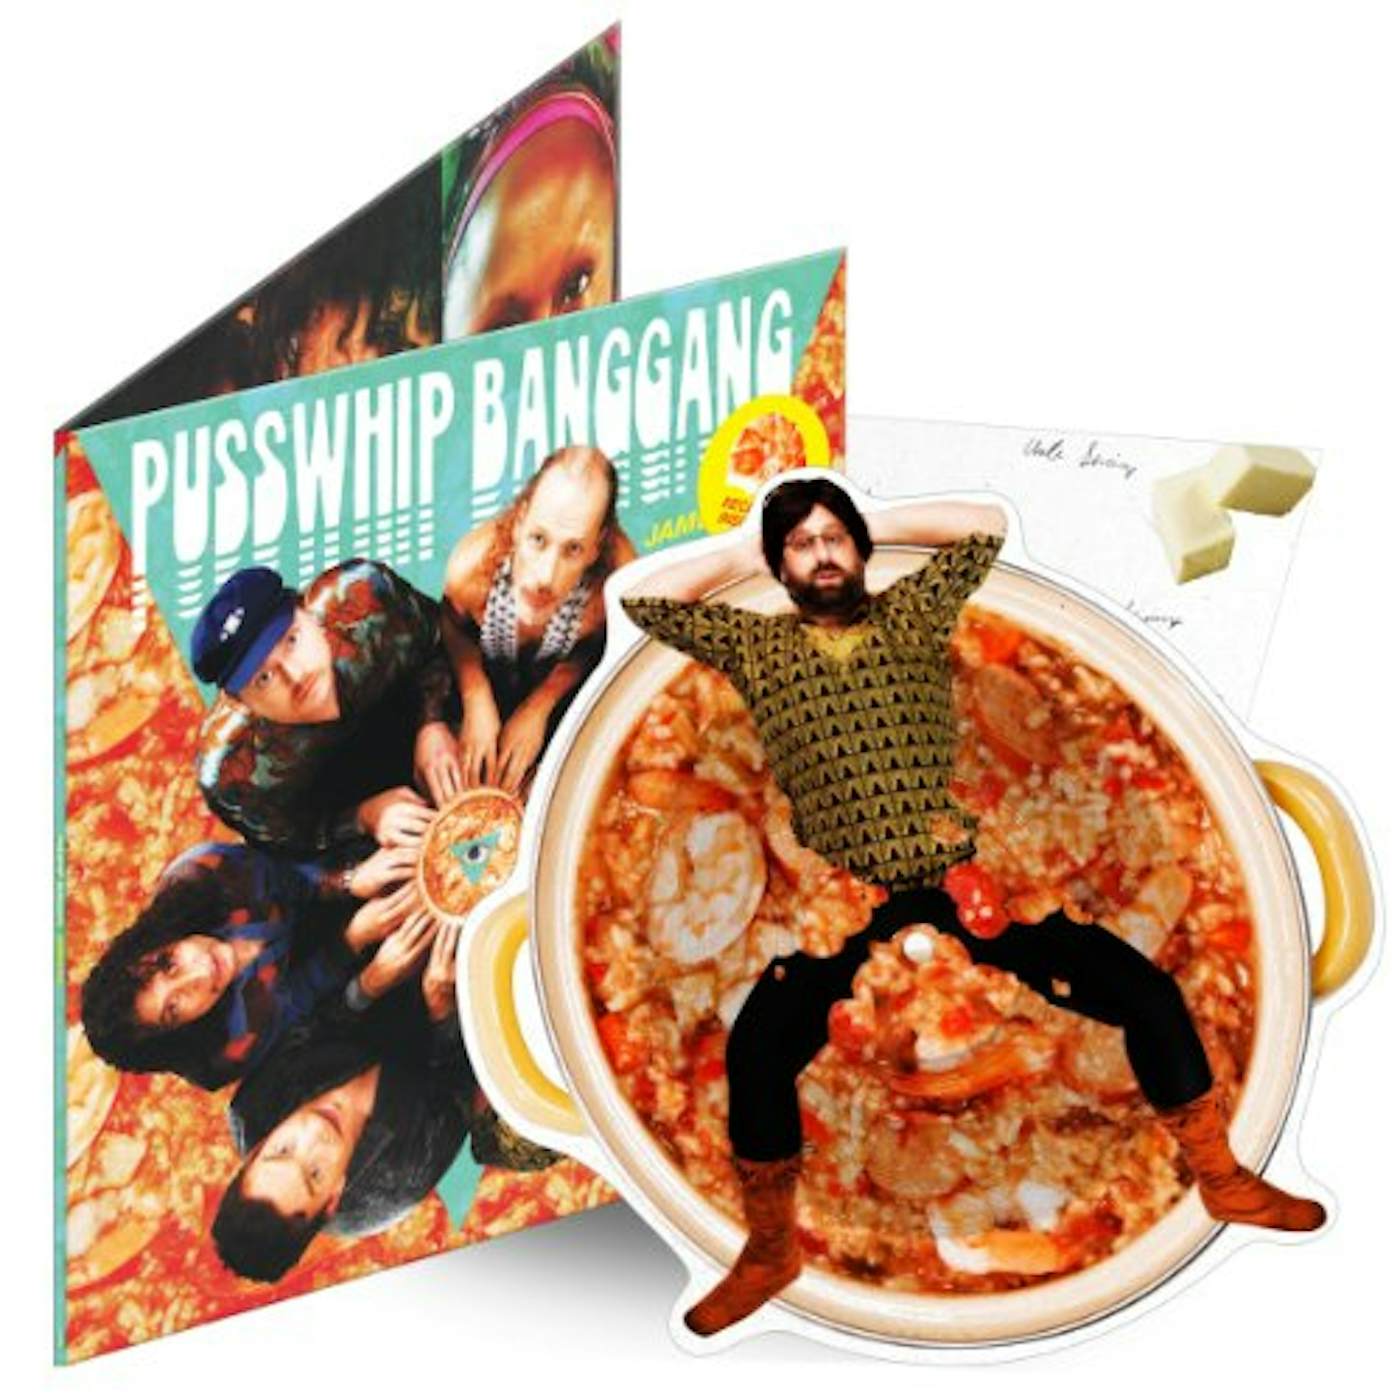 Pusswhip Banggang JAMBALAYA Vinyl Record - Picture Disc